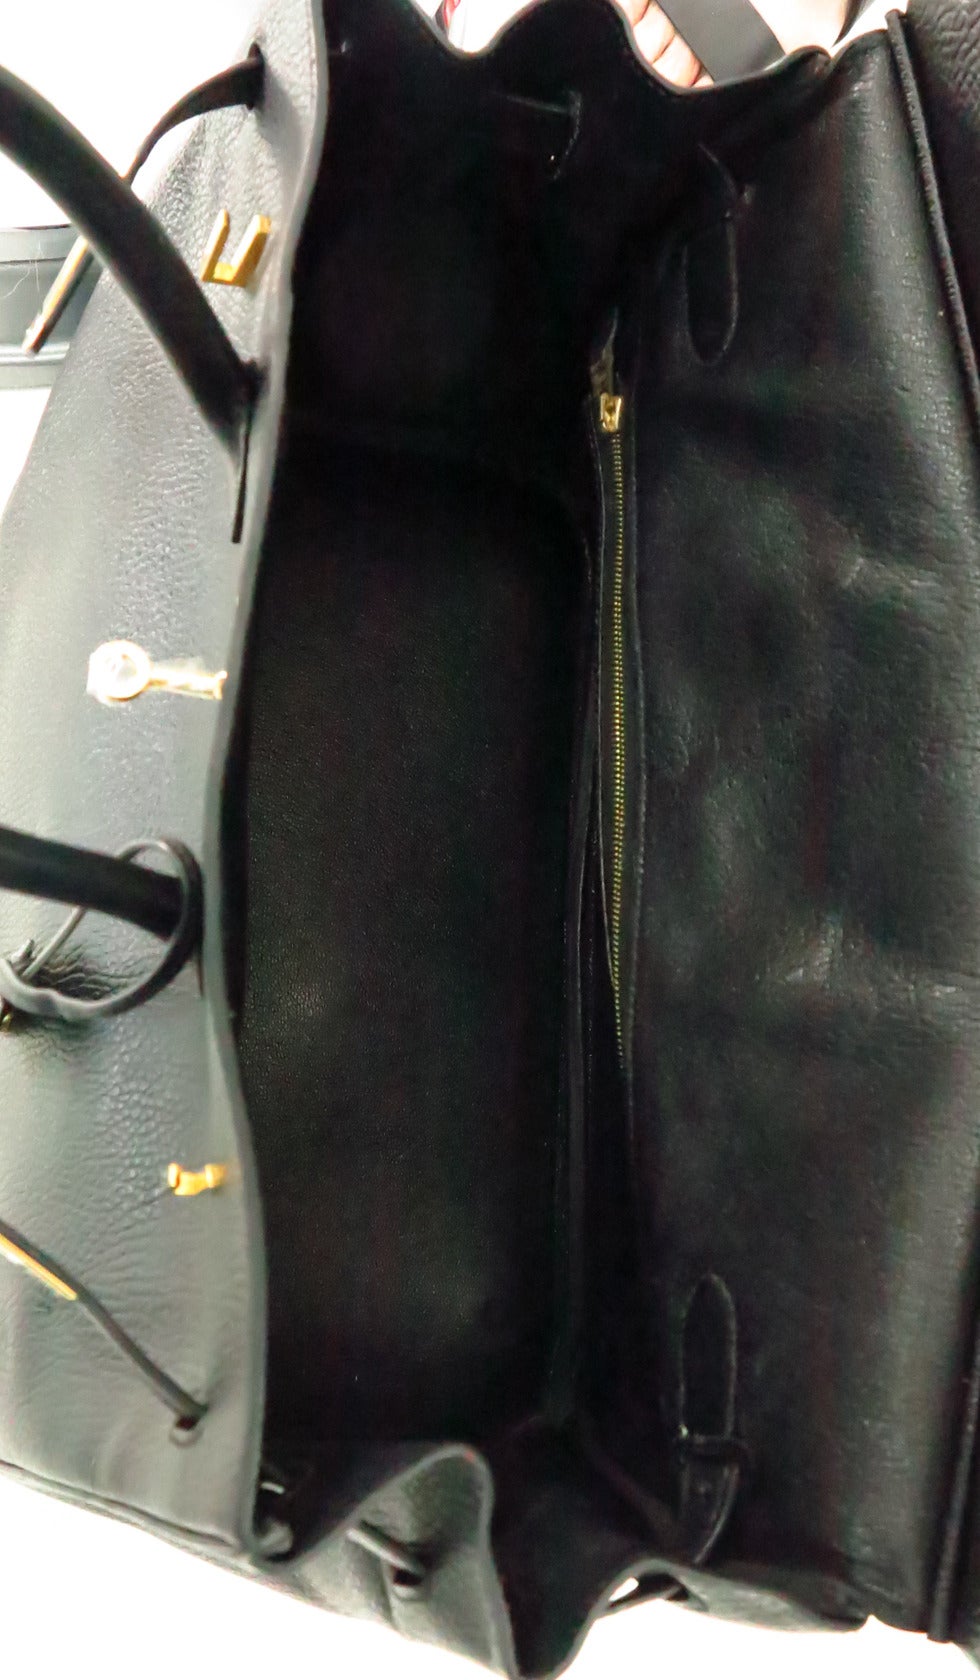 1998 Hermes black togo 35 Cm Birkin handbag with gold hardware 4